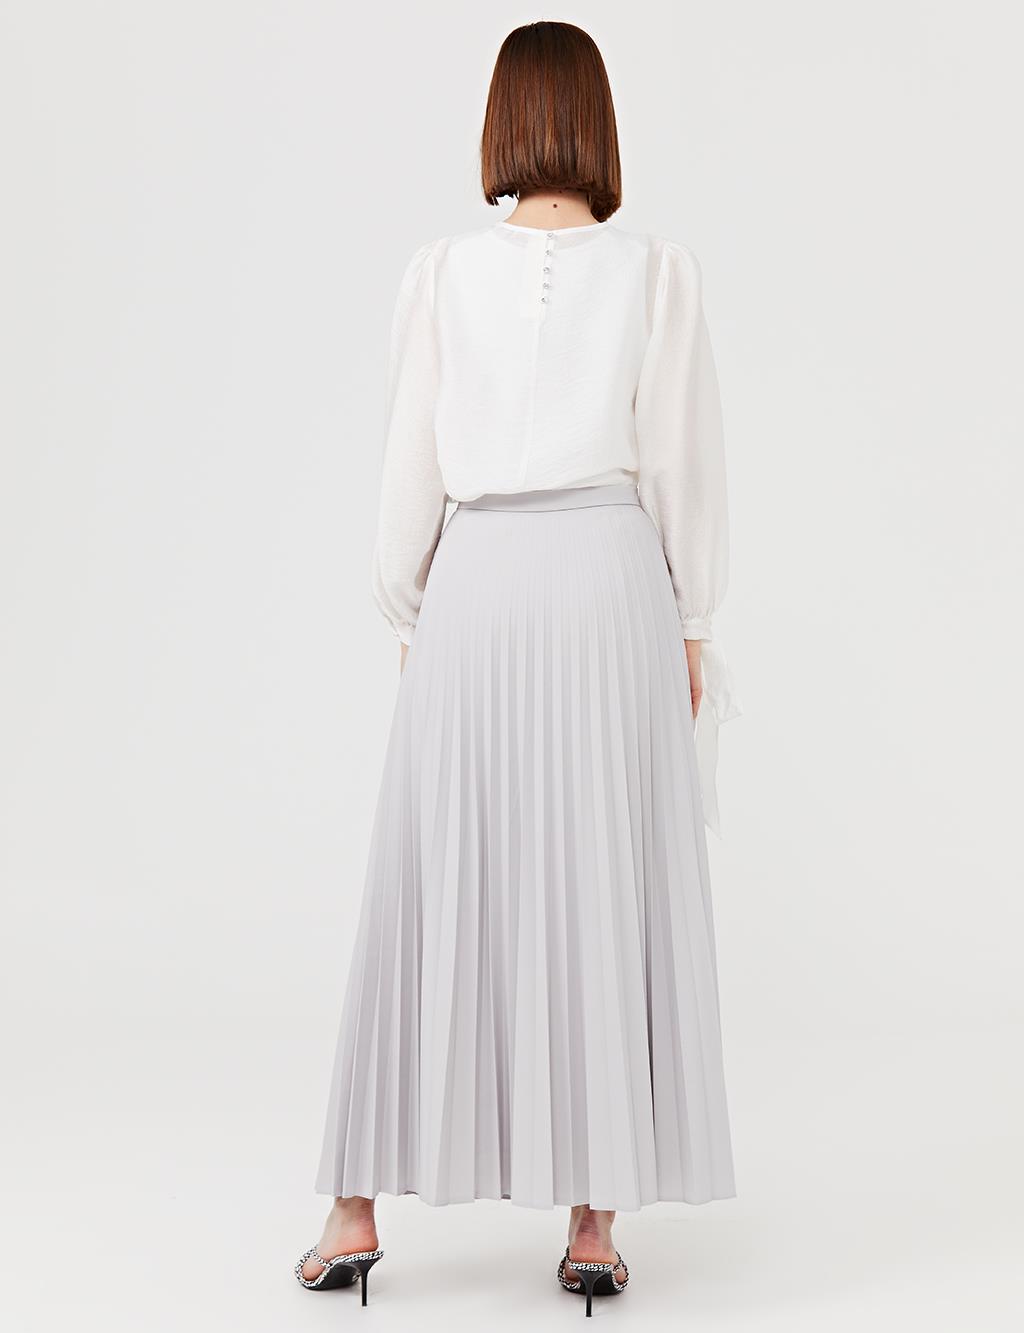 Basic Pleated Skirt SZ 12501 Gray